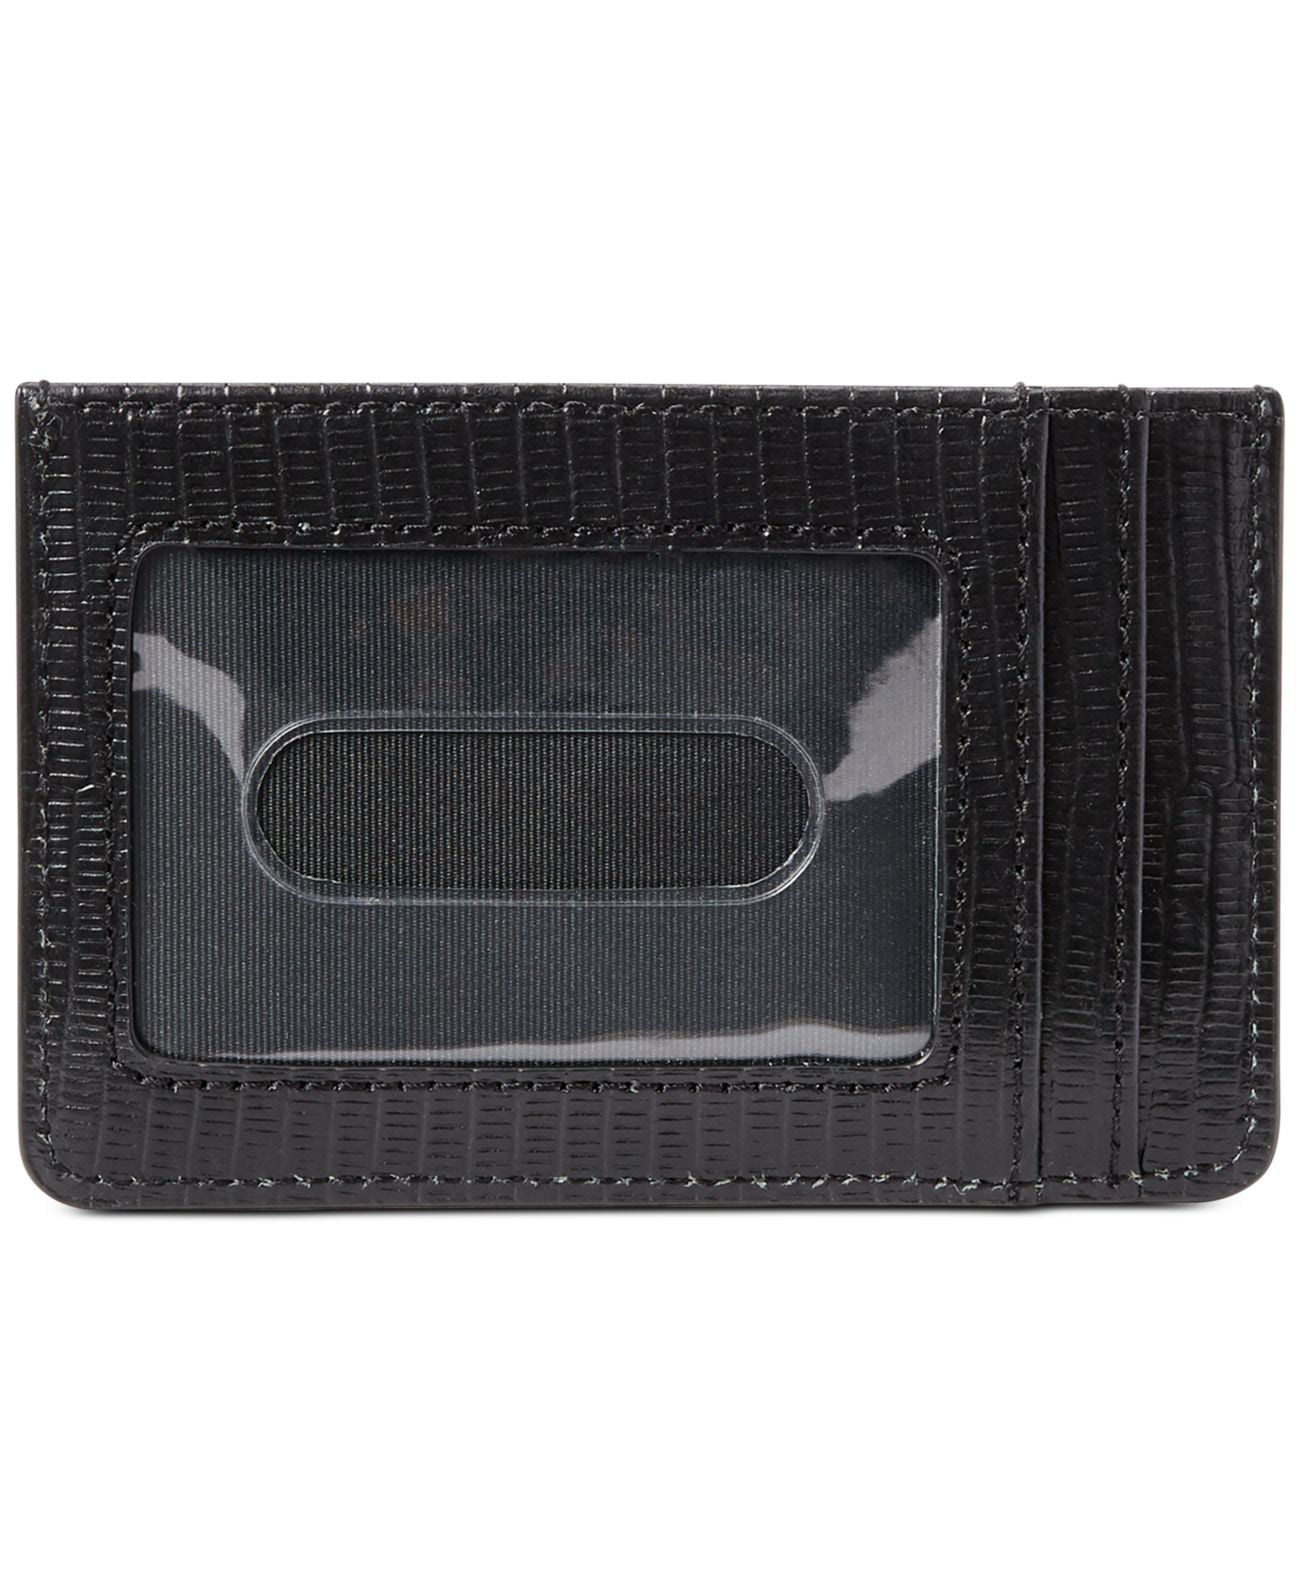 Ralph Lauren Lizard Embossed Slim Card Case Wallet Handbag – Gold 